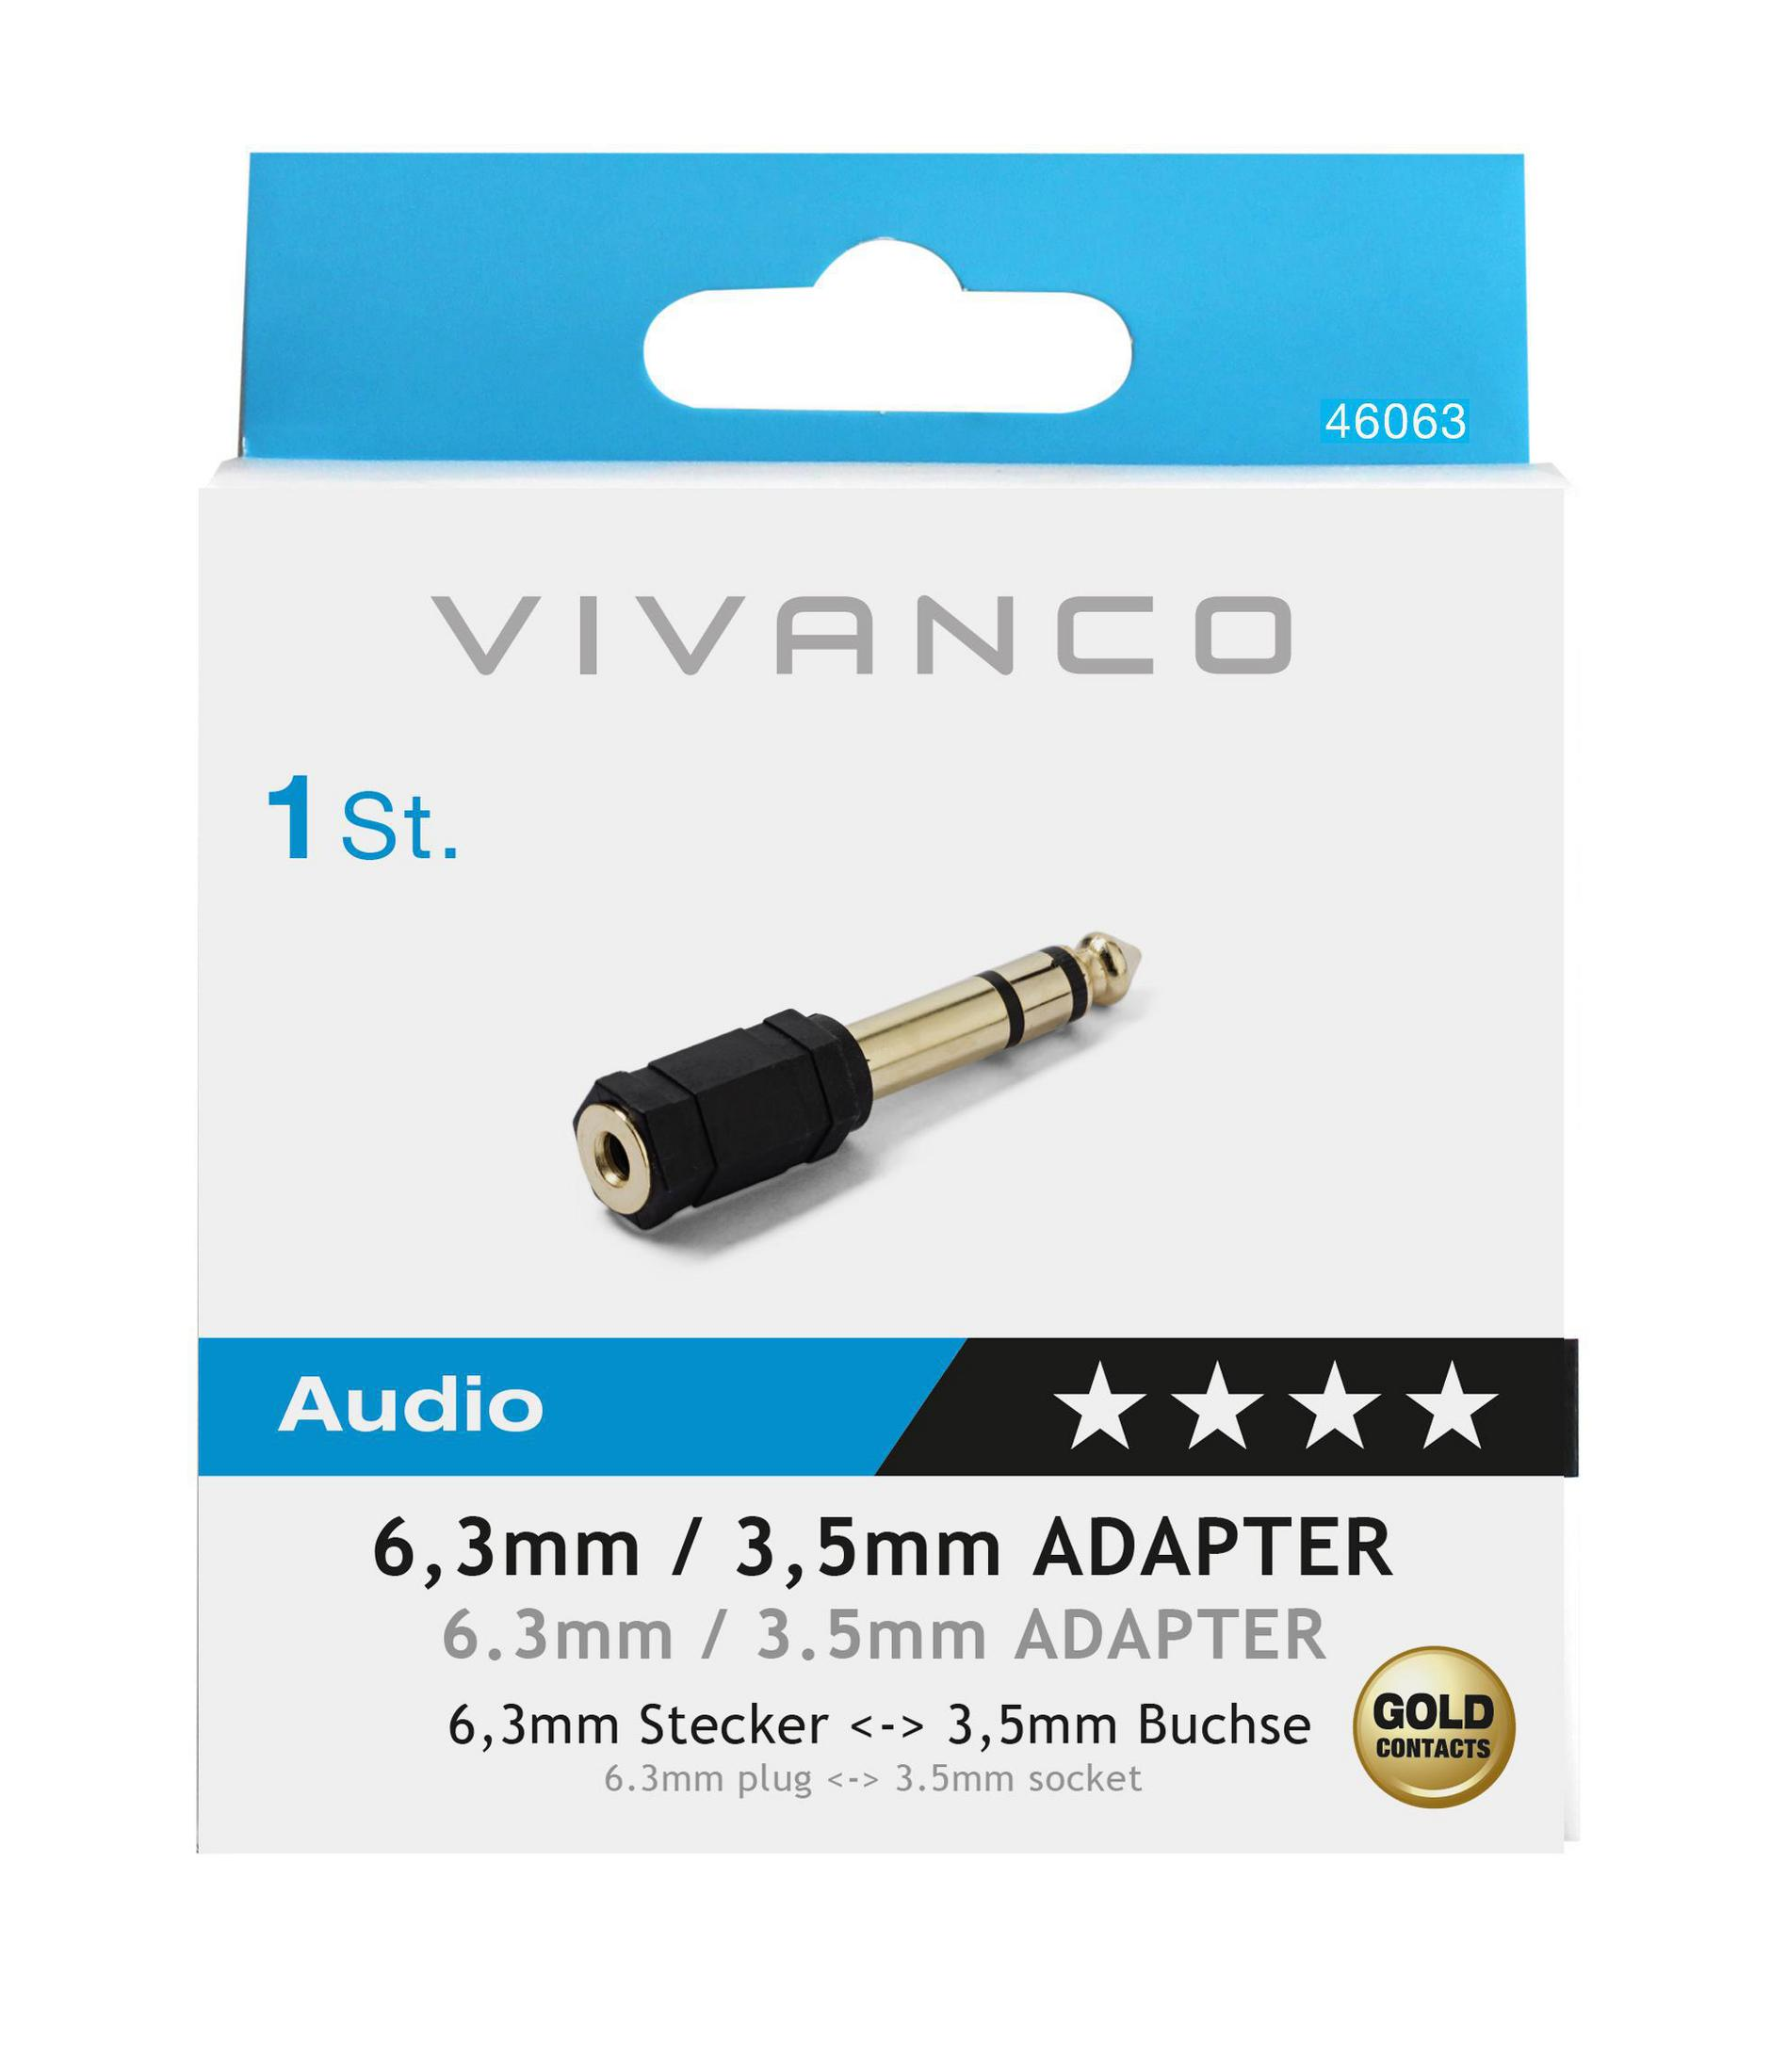 VIVANCO 46063, Klinken Adapter